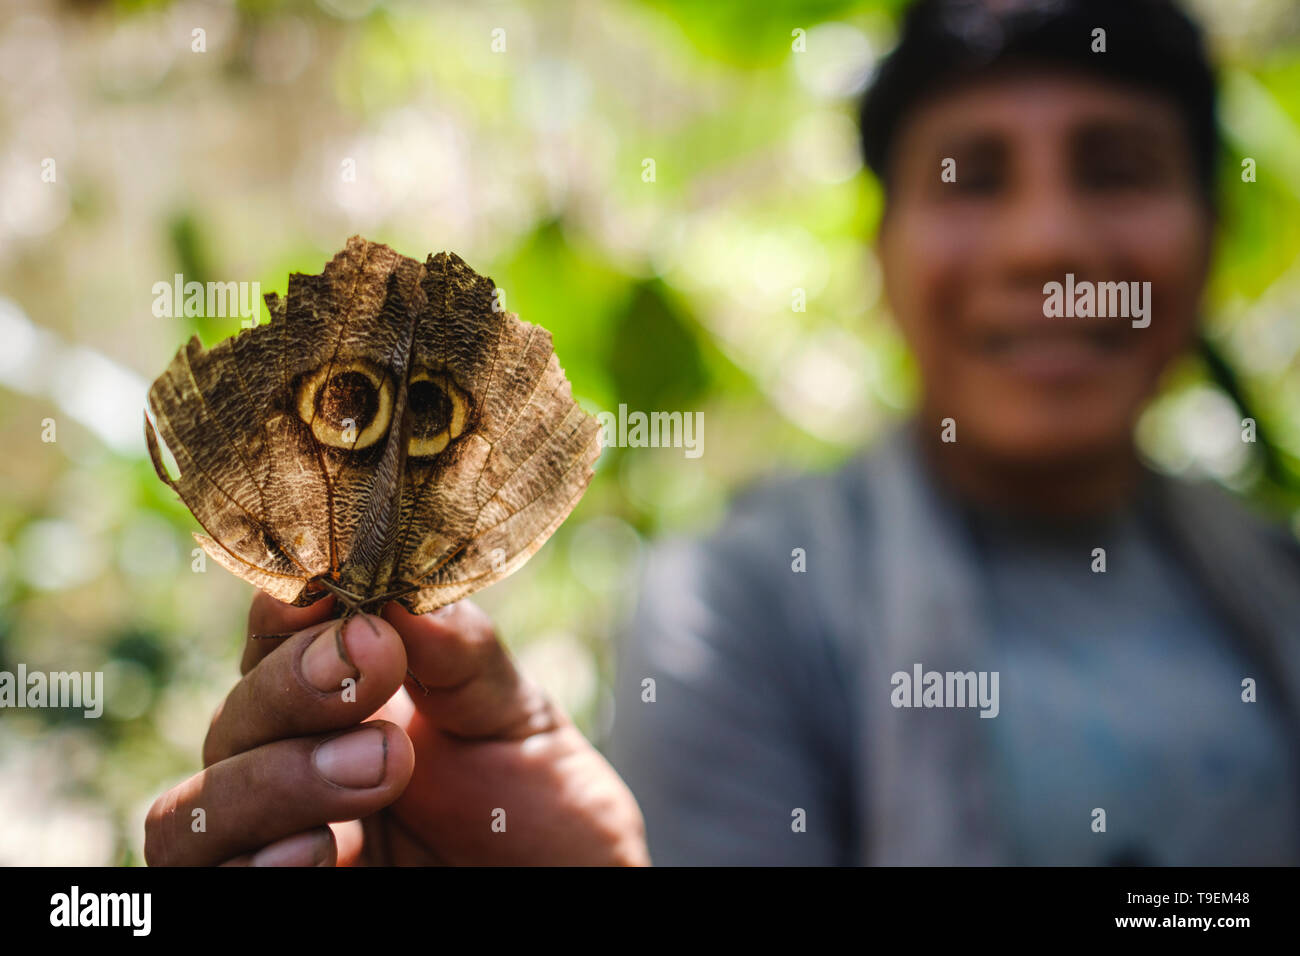 Les ailes de papillon qui ressemblent à un animal sauvage pour se protéger face au Mariposario Pilpintuwasi, Amazonie péruvienne, département de Loreto, Iquitos, Pérou Banque D'Images